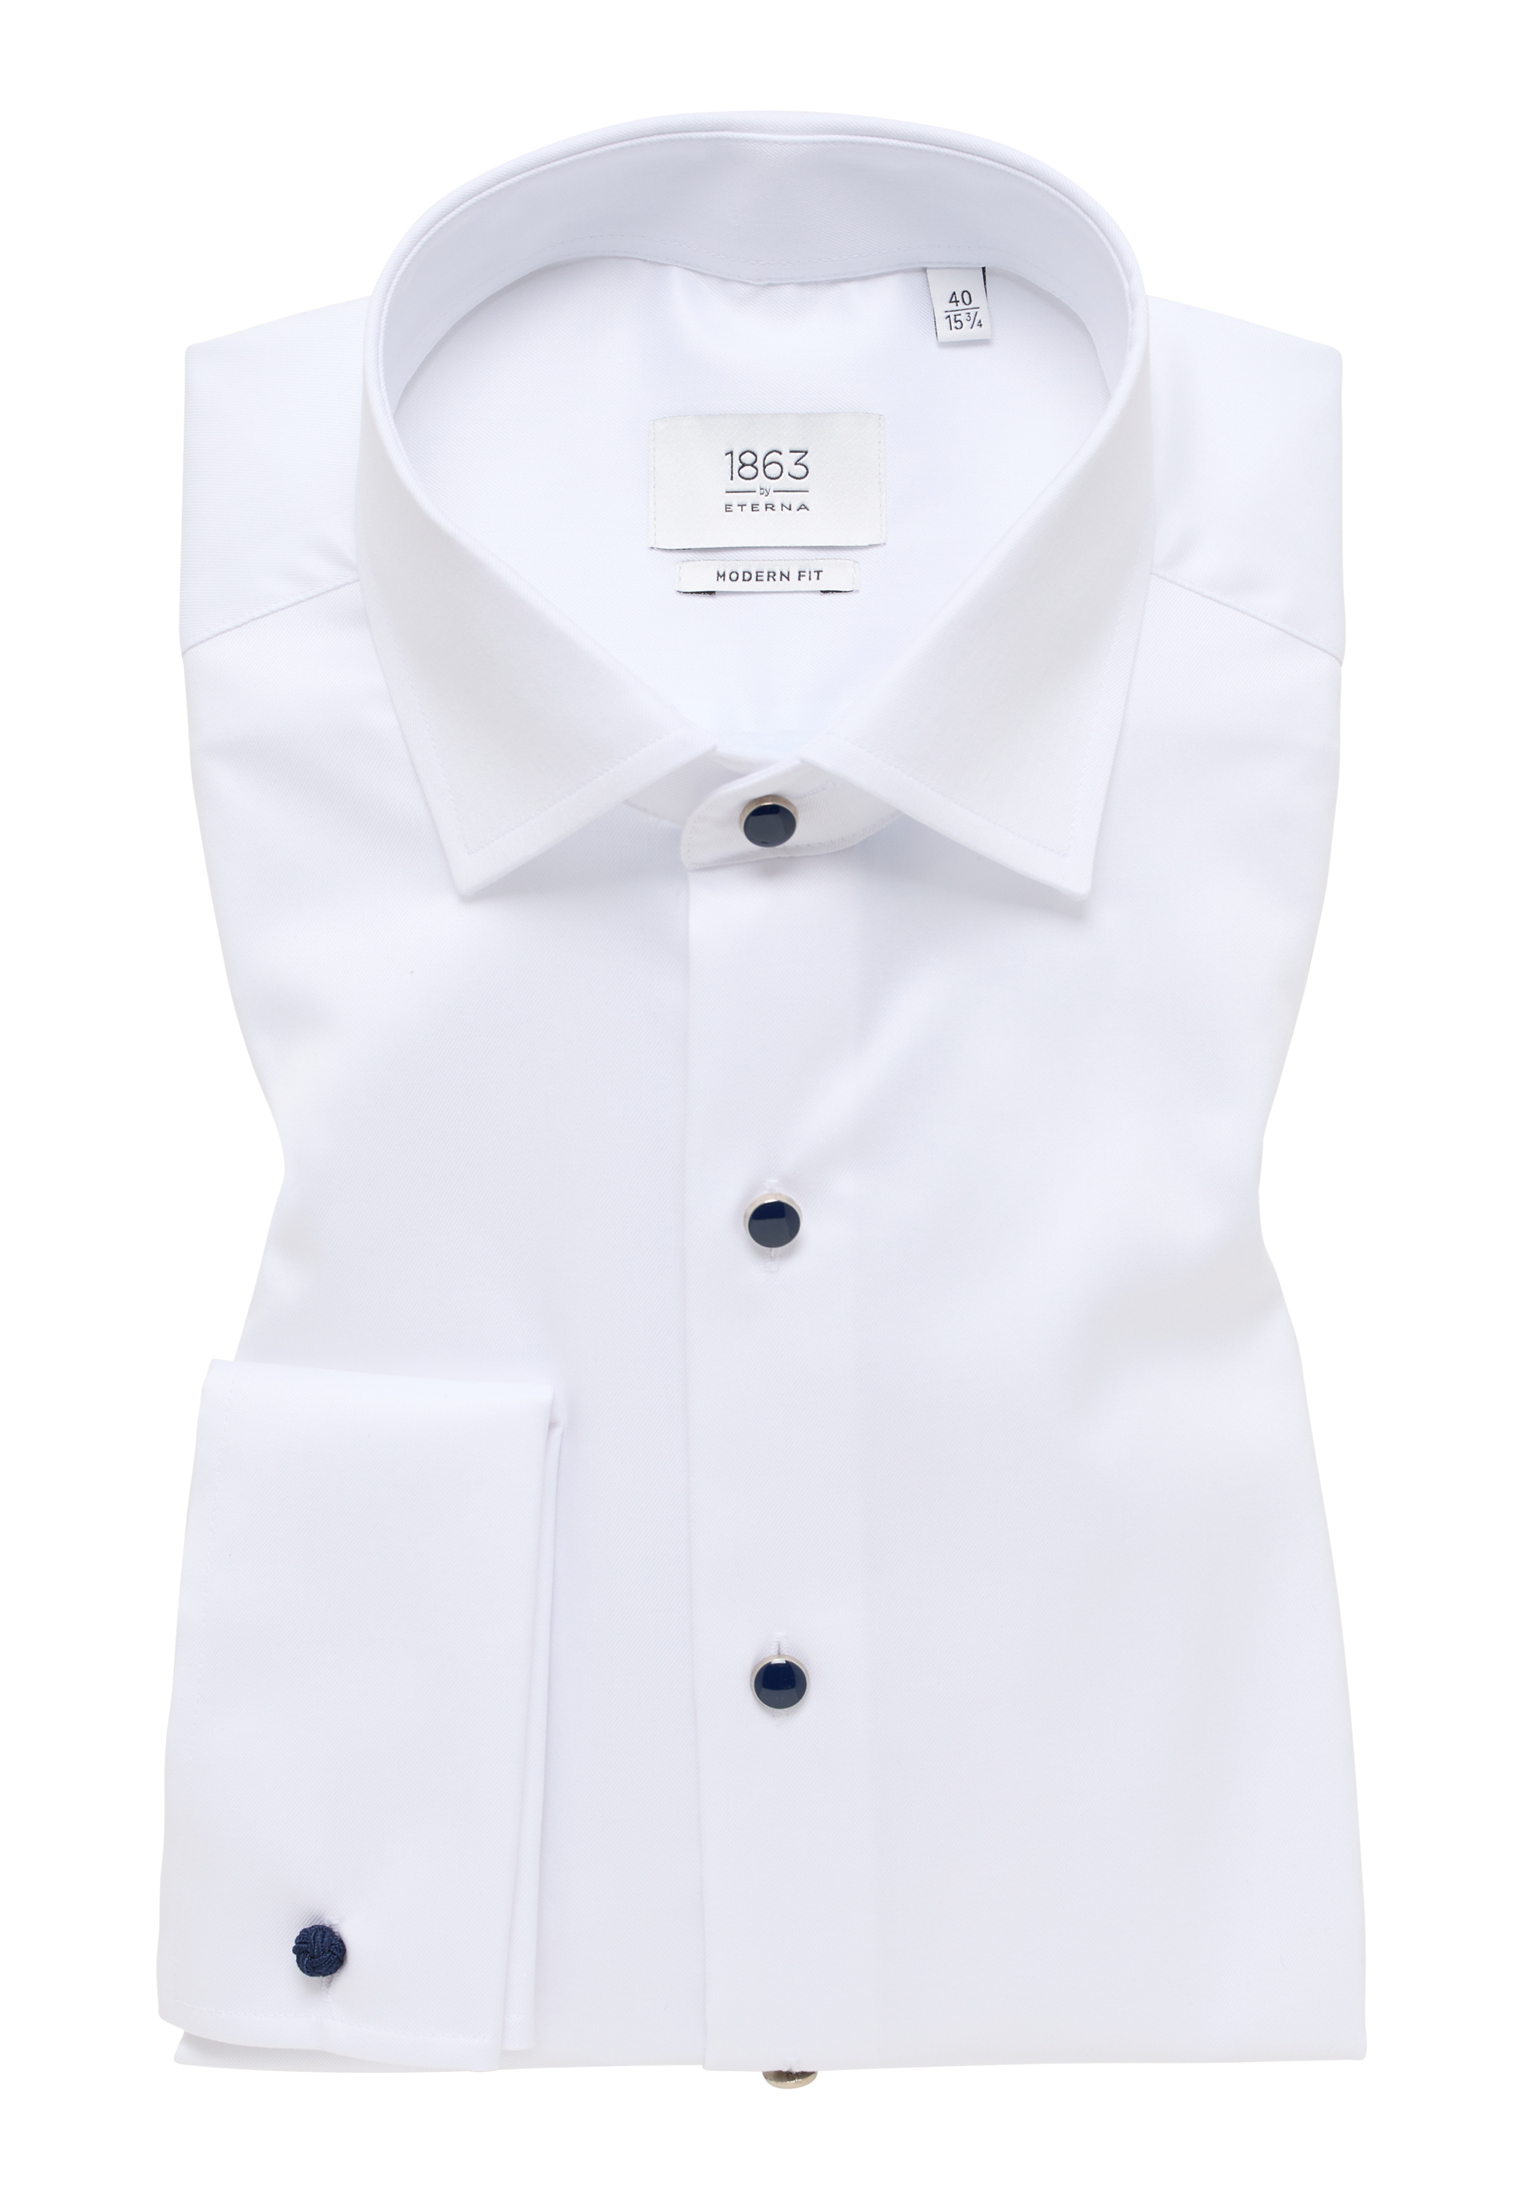 Shirt | | | in | long 45 1SH11469-00-01-45-1/1 white Luxury plain white FIT sleeve MODERN